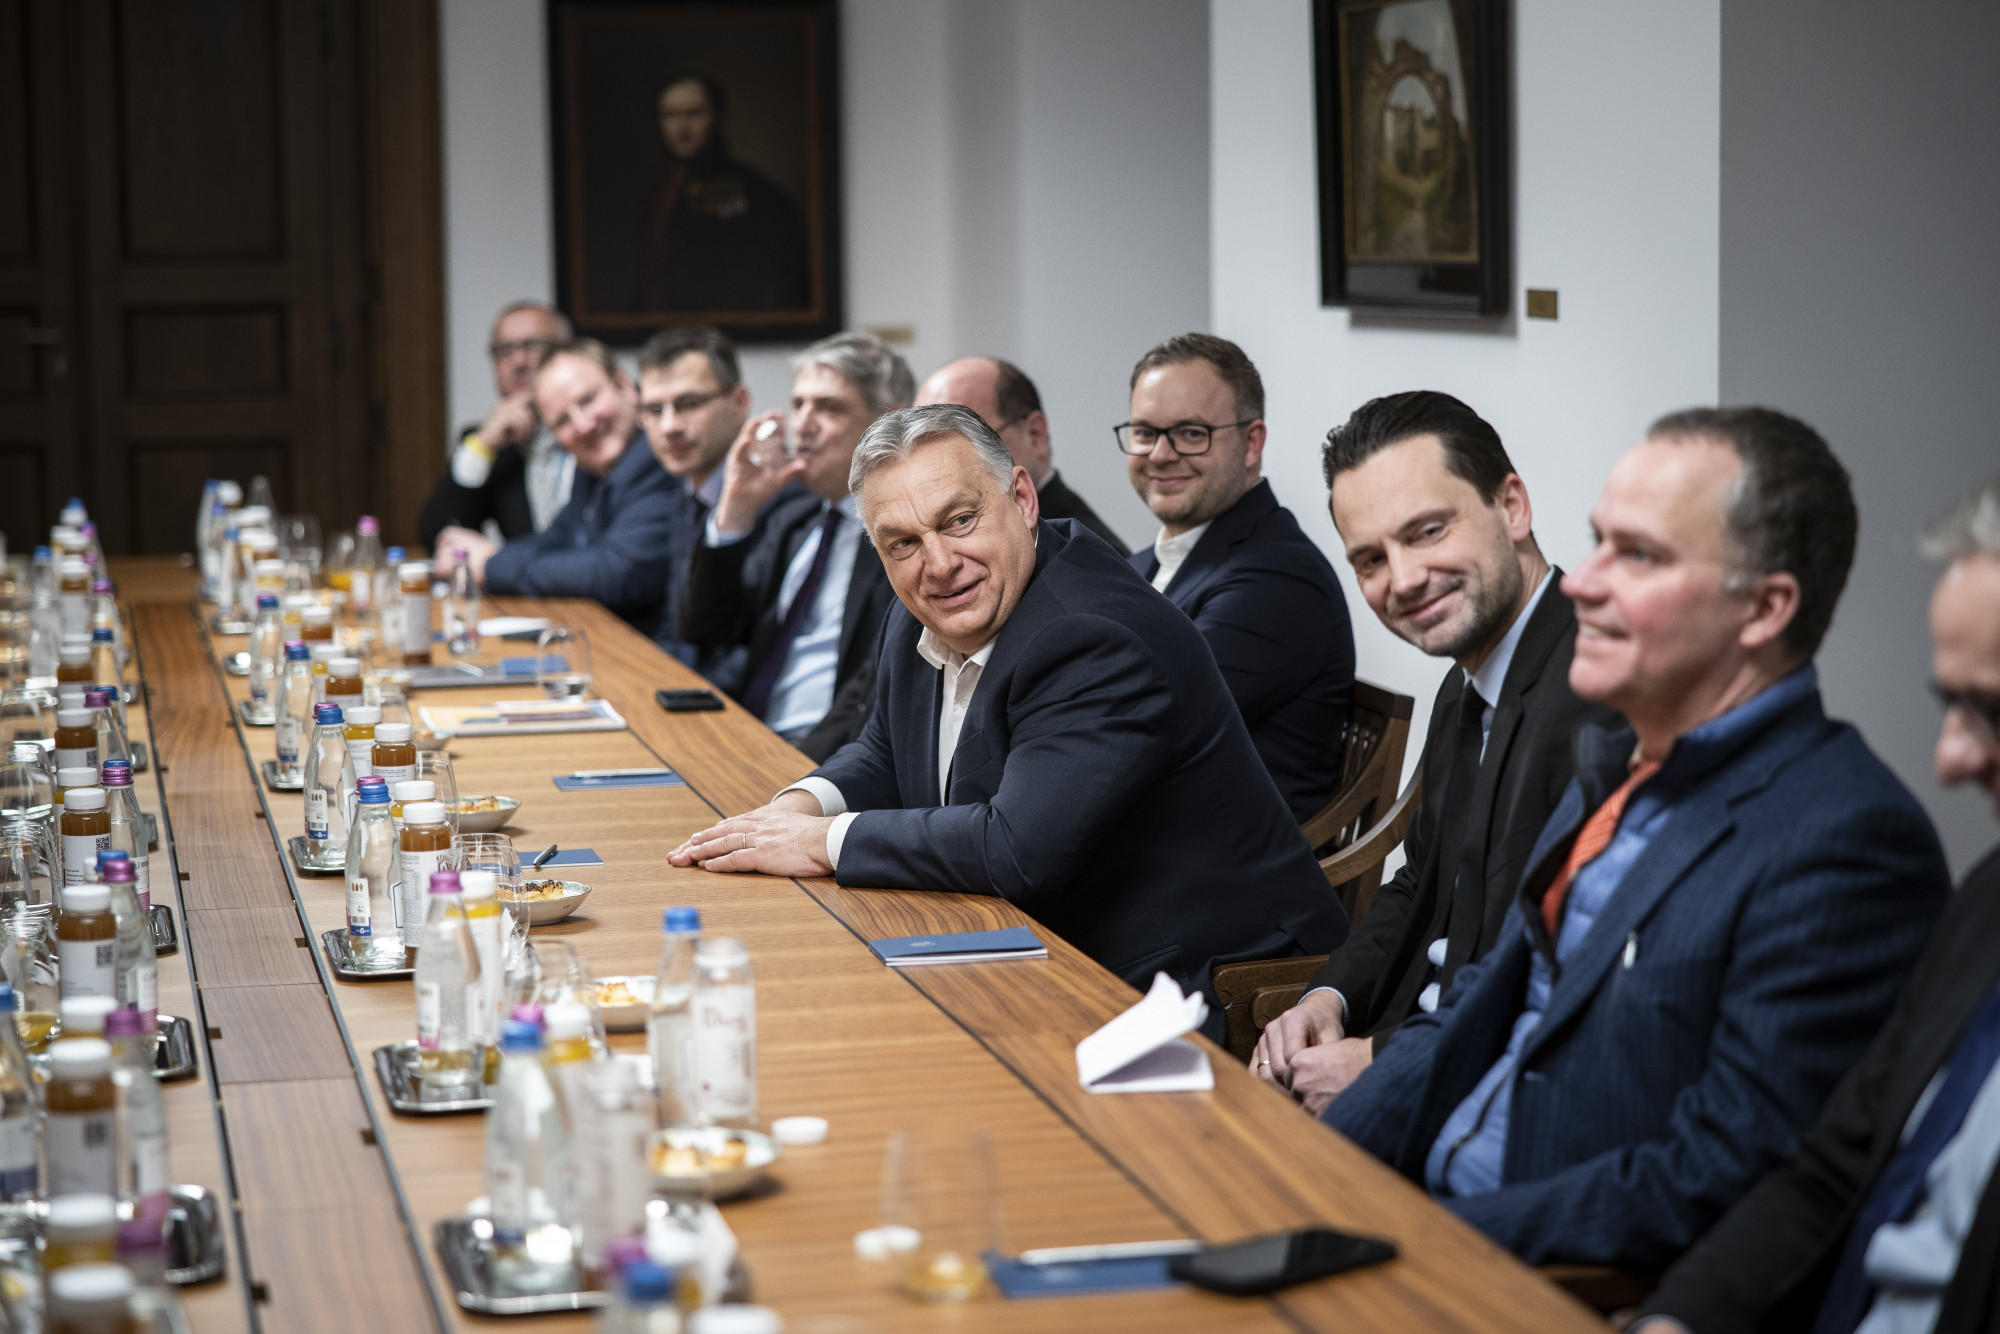 Botrány lett Orbán Viktor EU-kilépéses mondatából, ami valószínűleg nem abban a formában hangzott el